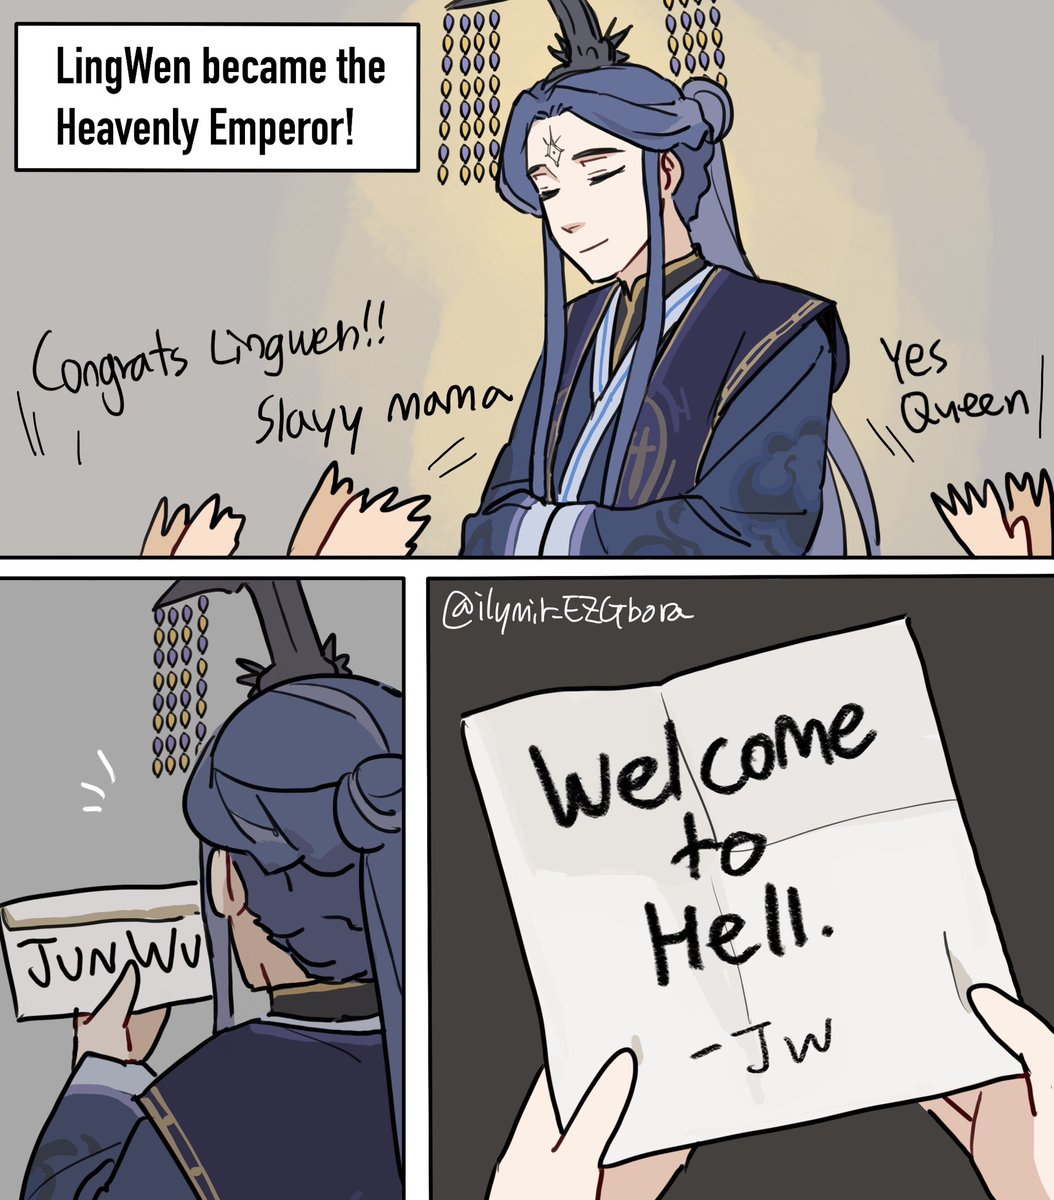 If Lingwen became a heavenly emperor someday   #lingwen #junwu